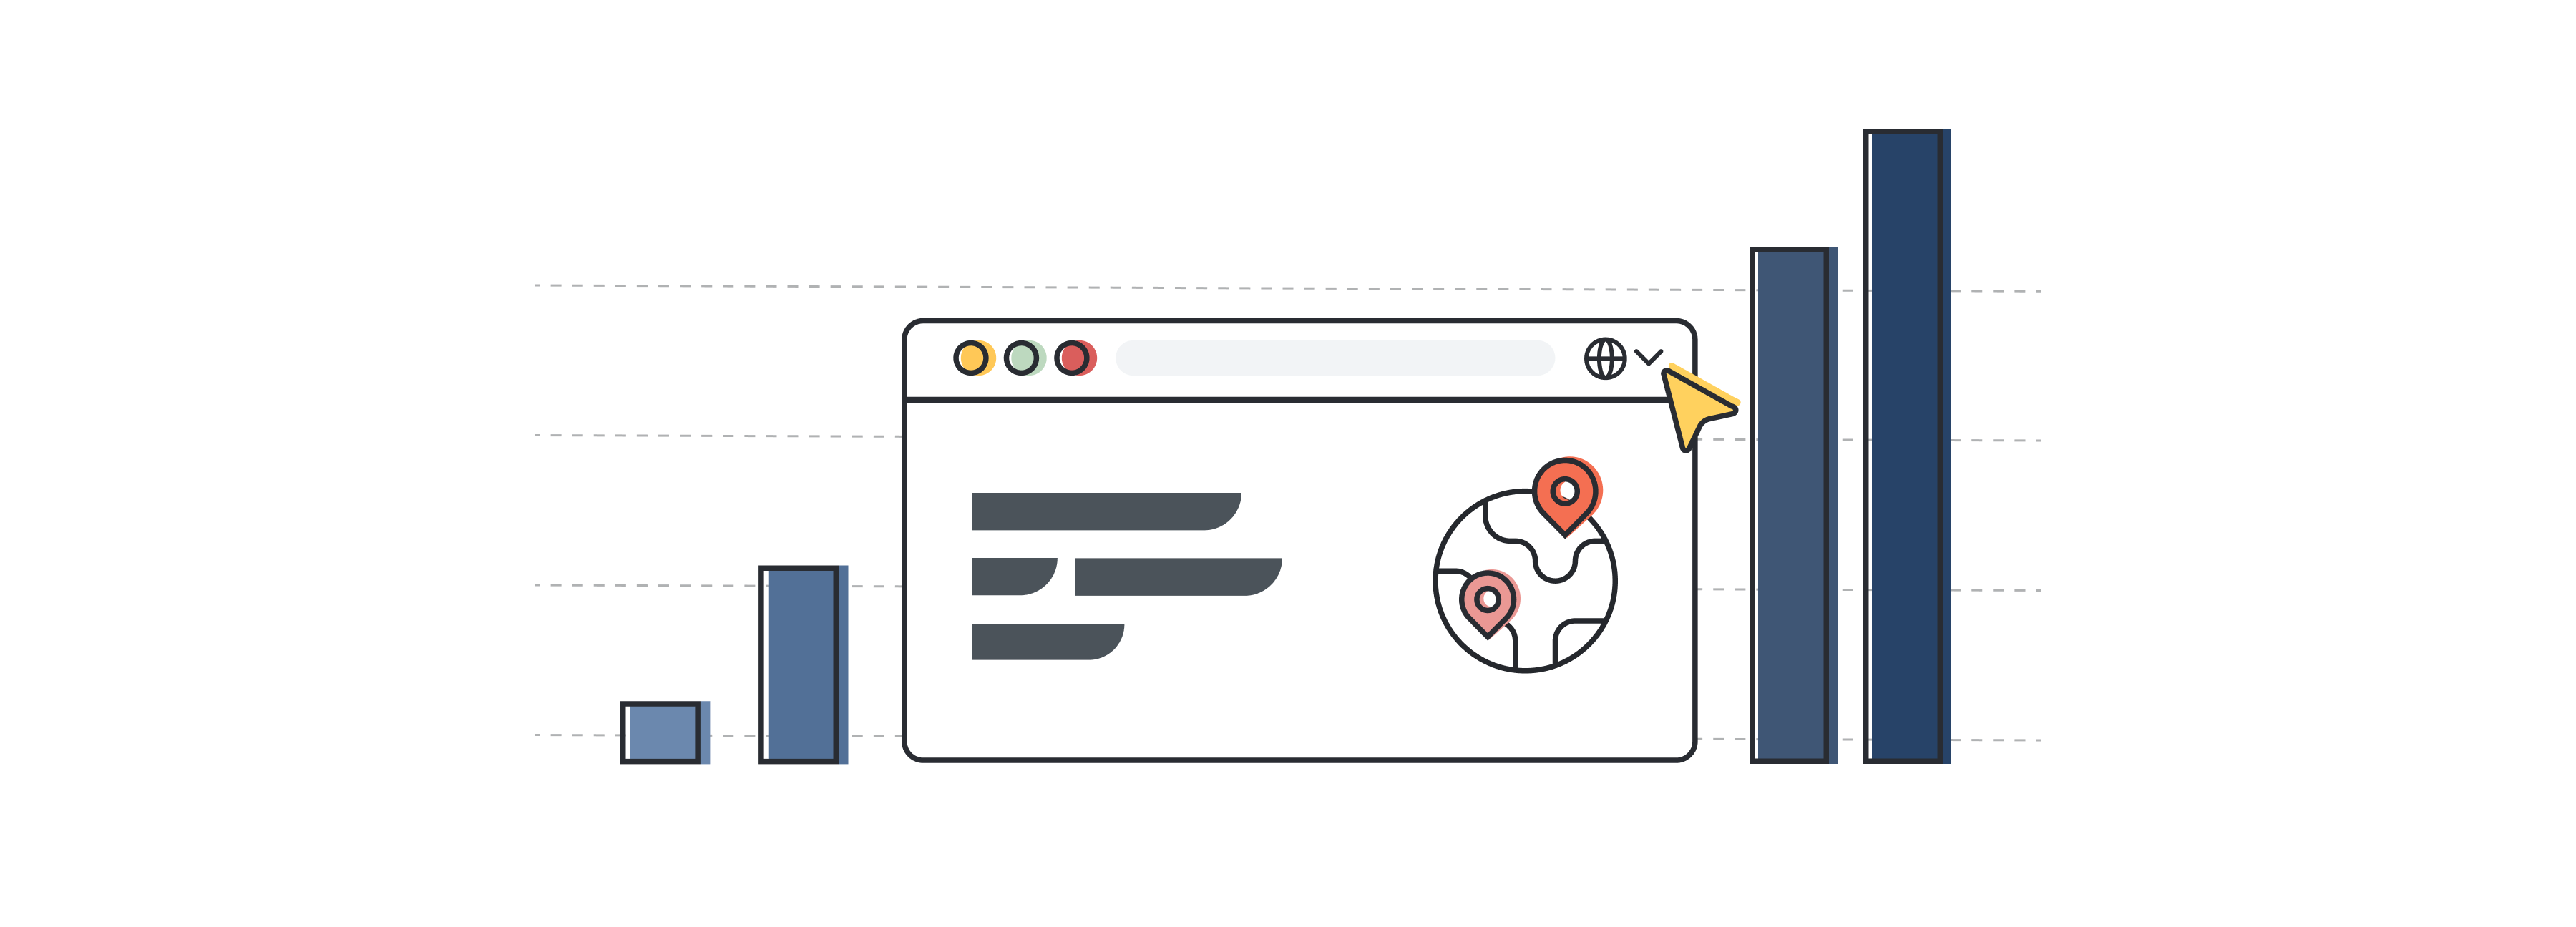 Ilustración de una interfaz de un sitio web que representa el sector de la traducción y la localización con unas barras que simbolizan su crecimiento